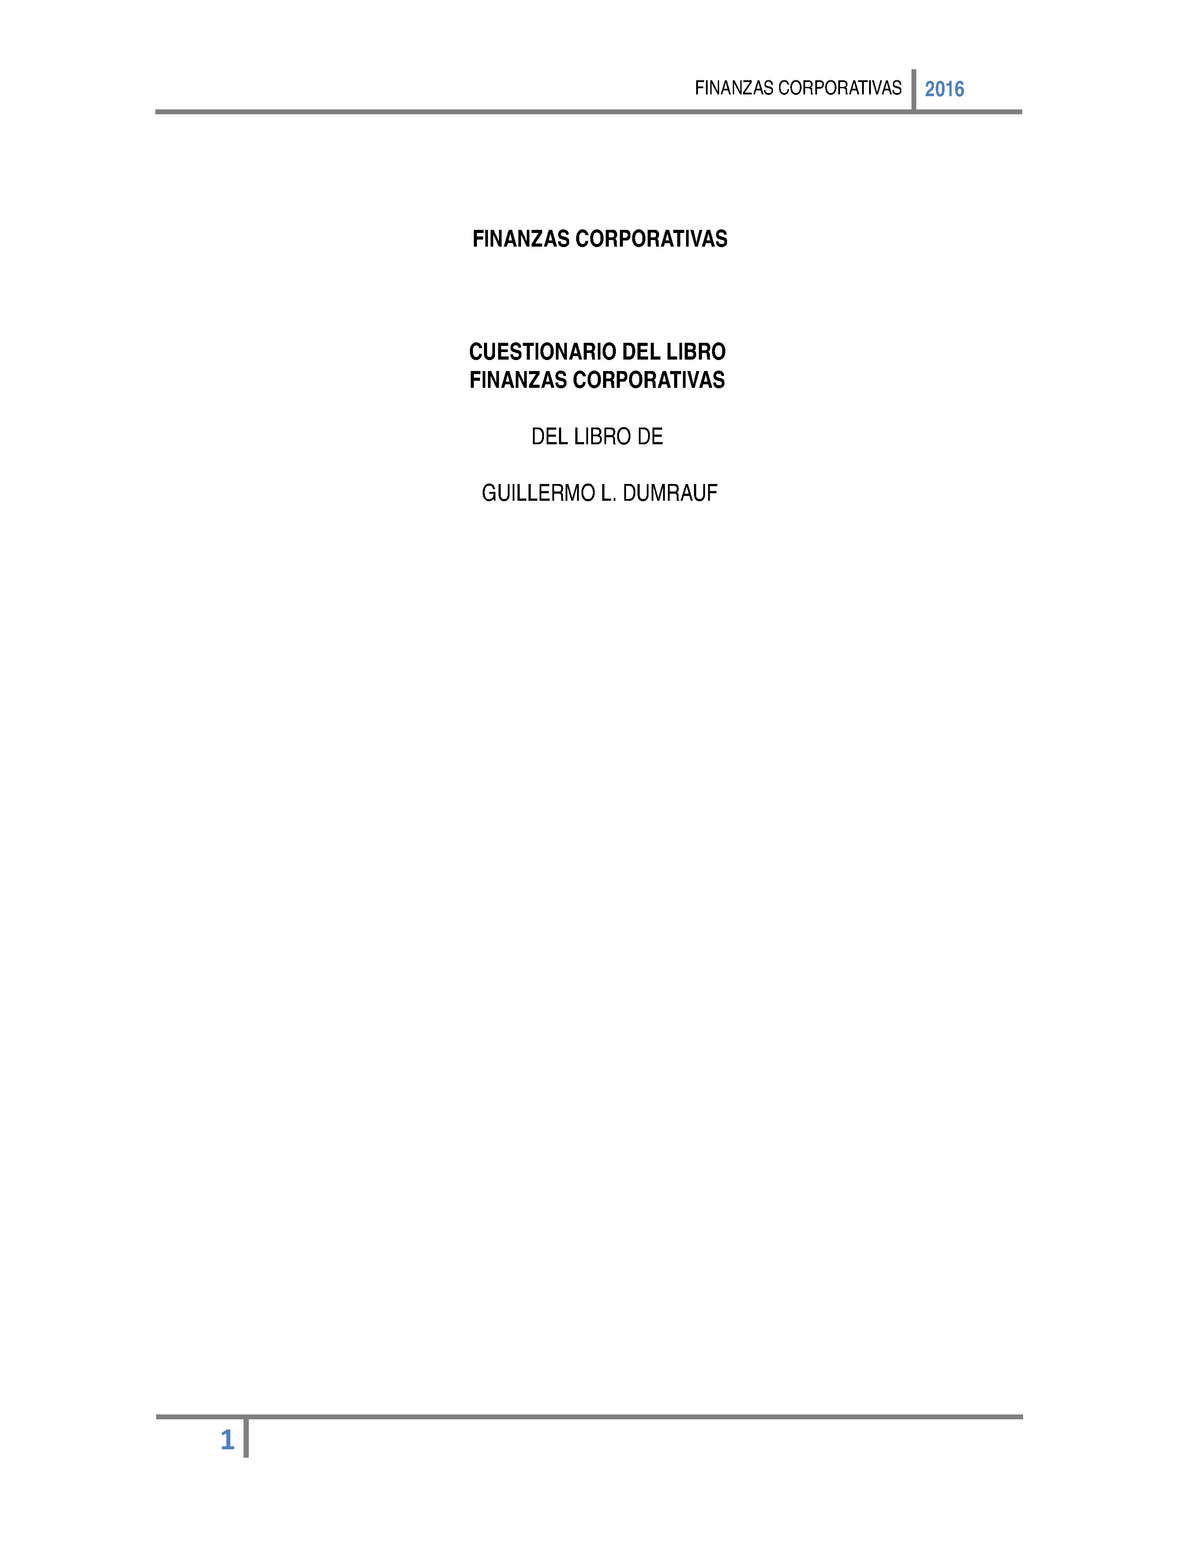 317335305 Cuestionario Libro De Guillermo Dumraum Finanzas Corporativas Finanzas Corporativas 1048